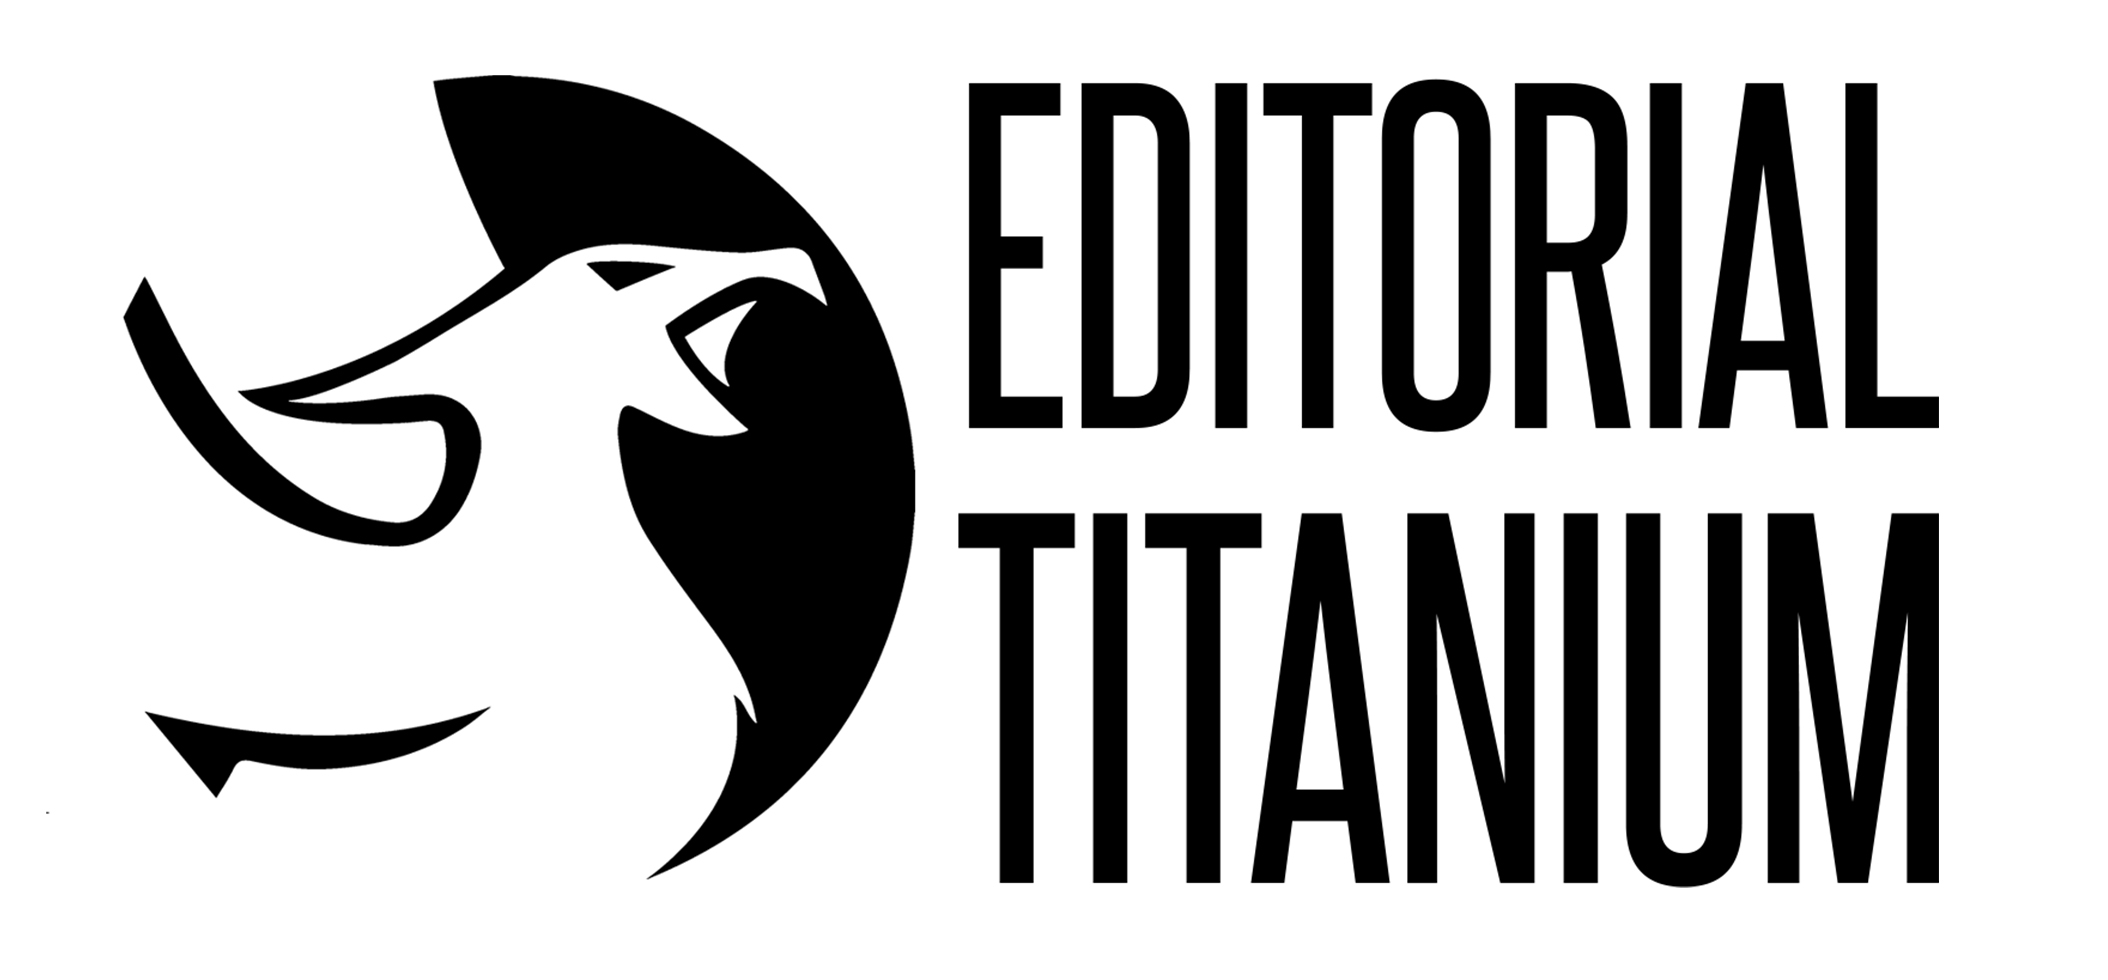 Editorial Titanium